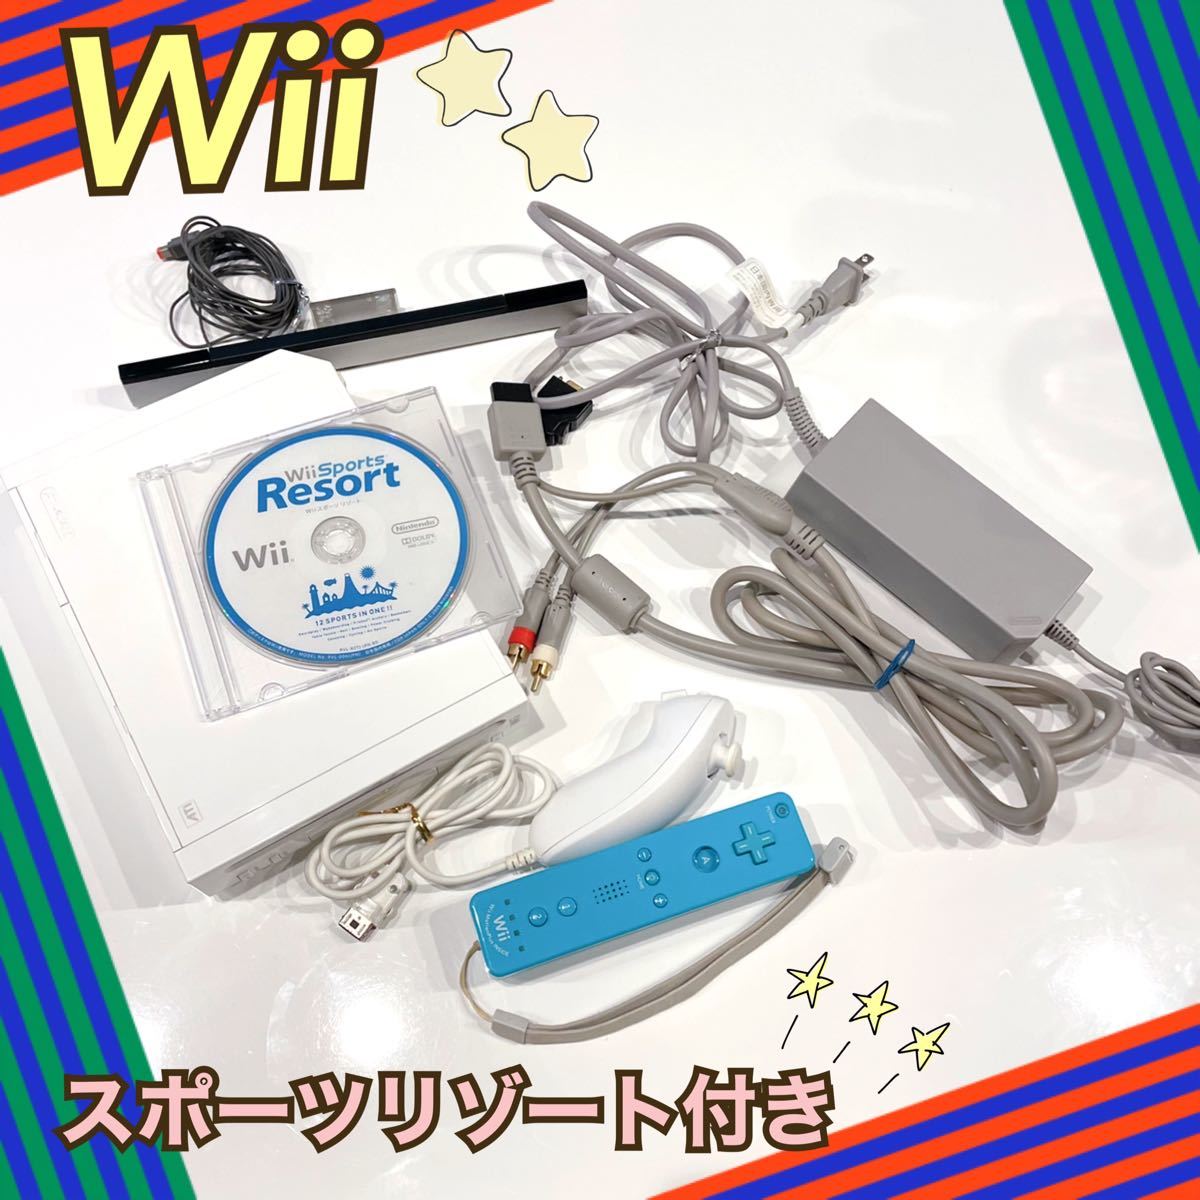 任天堂 Wii本体 ホワイト☆Wiiリモコン  ヌンチャク周辺機器ケーブル Wii スポーツリゾートソフト付き ★